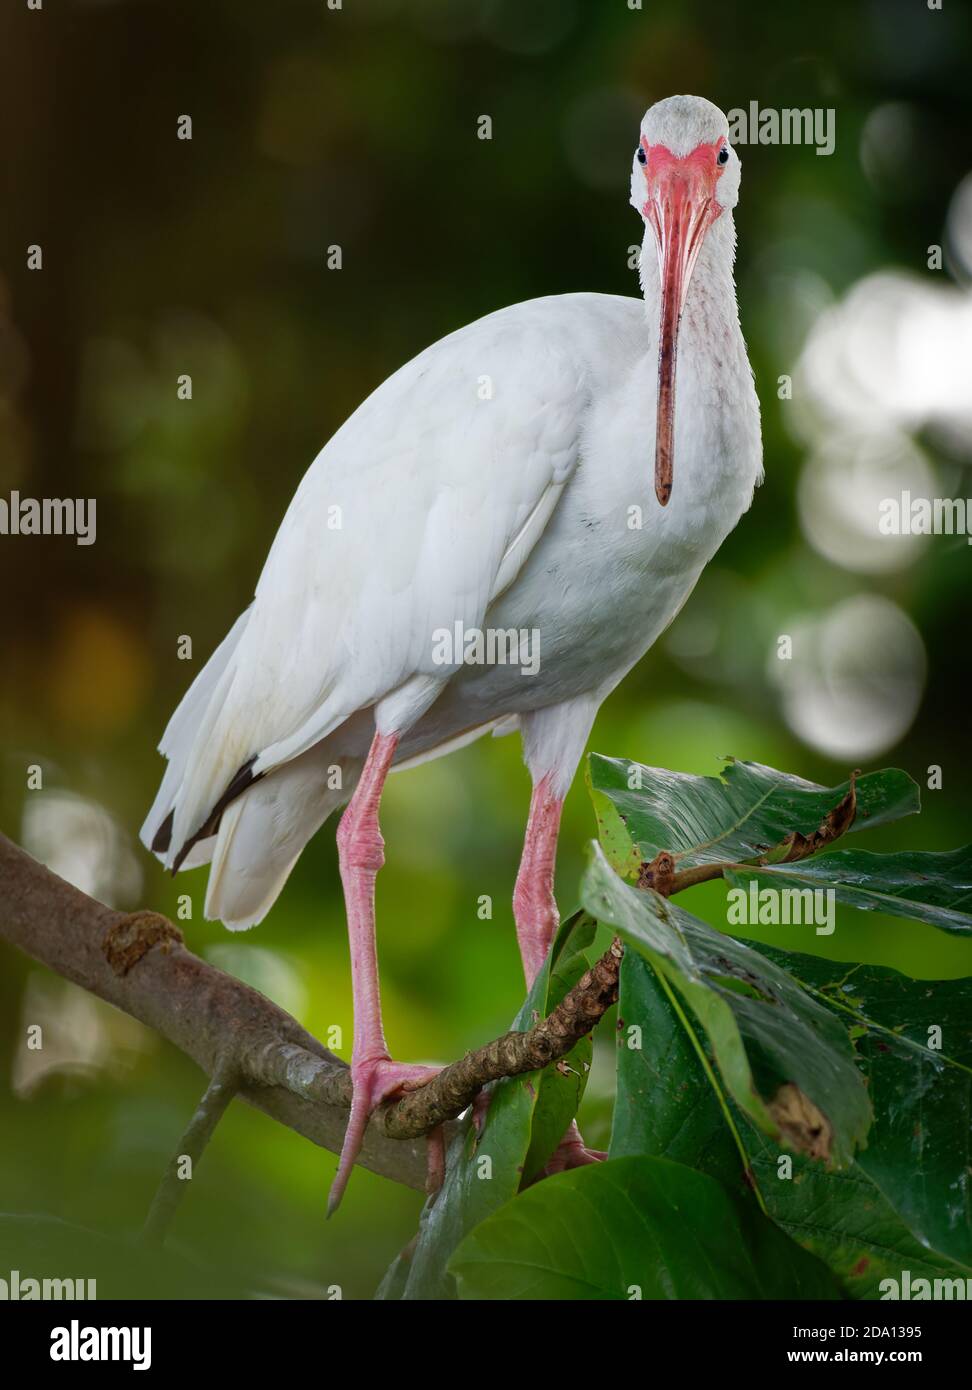 Blanc américain ibis - Eudocimus albus oiseau blanc avec bec rouge et pattes de la famille des Threskiornithidae, de Virginie via la côte du Golfe des Etats-Unis Banque D'Images